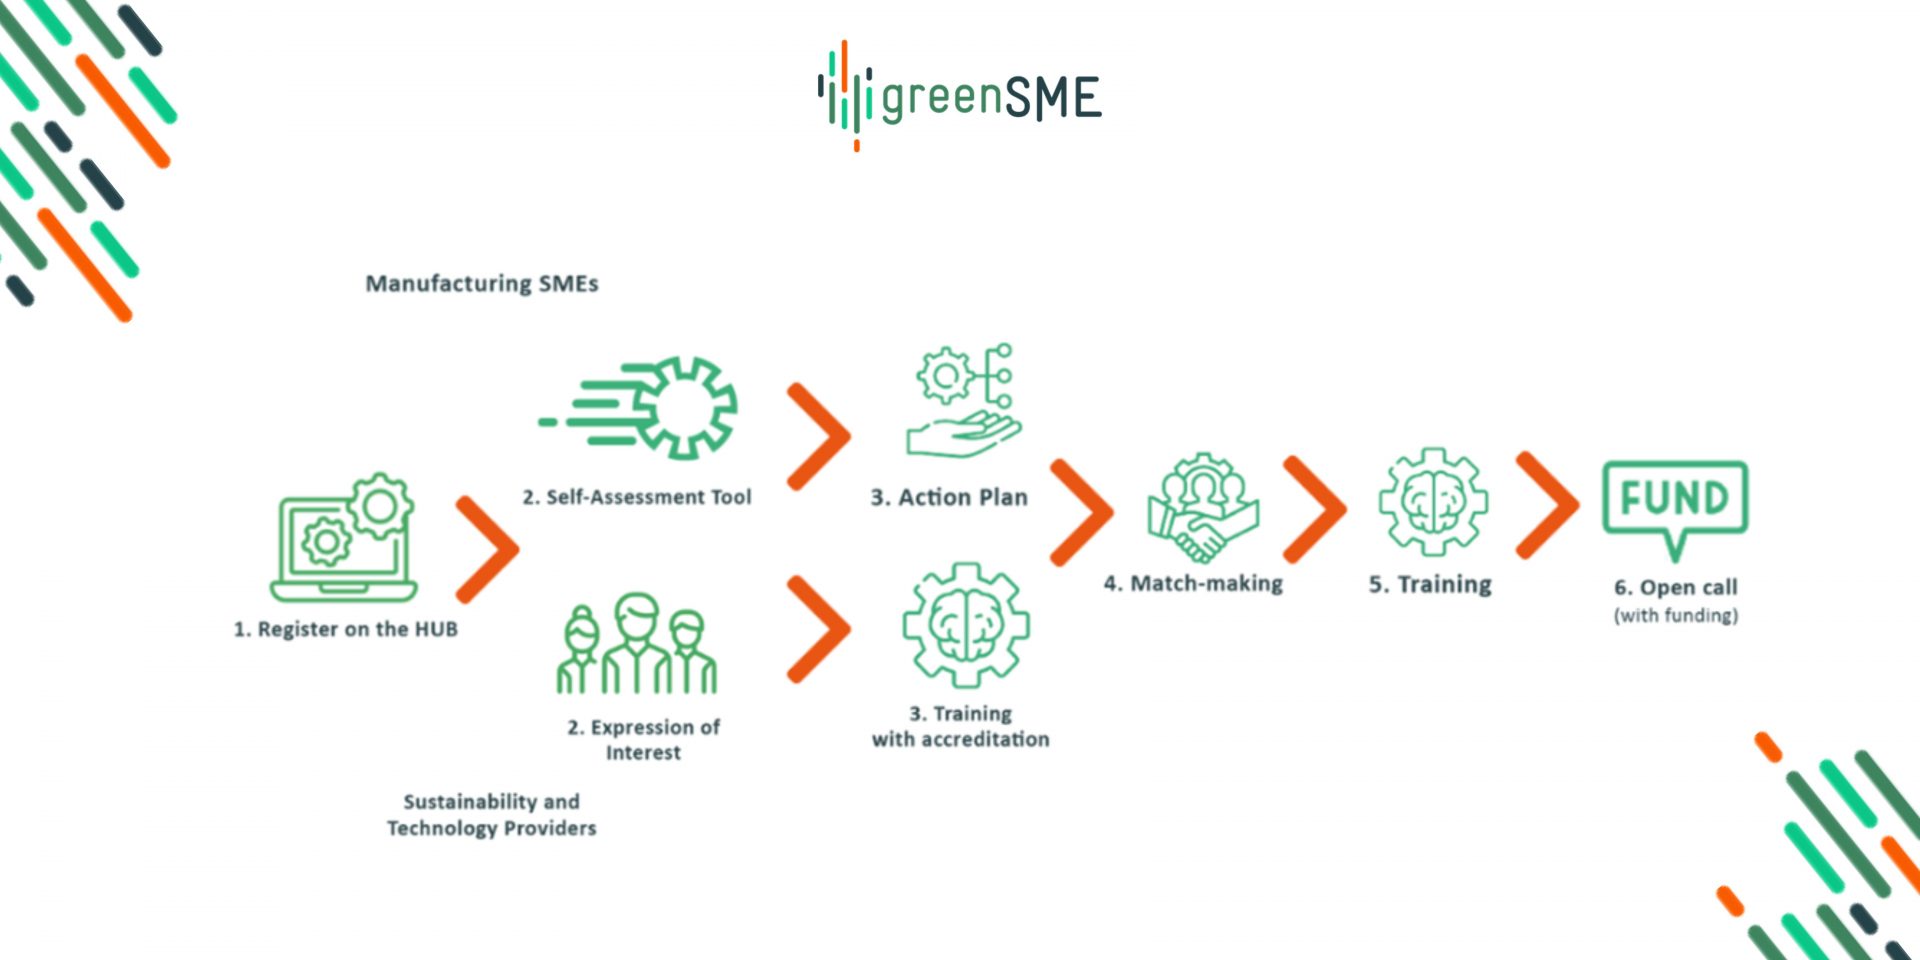 greenSME finanziamenti per la sostenibilità delle PMI manifatturiere